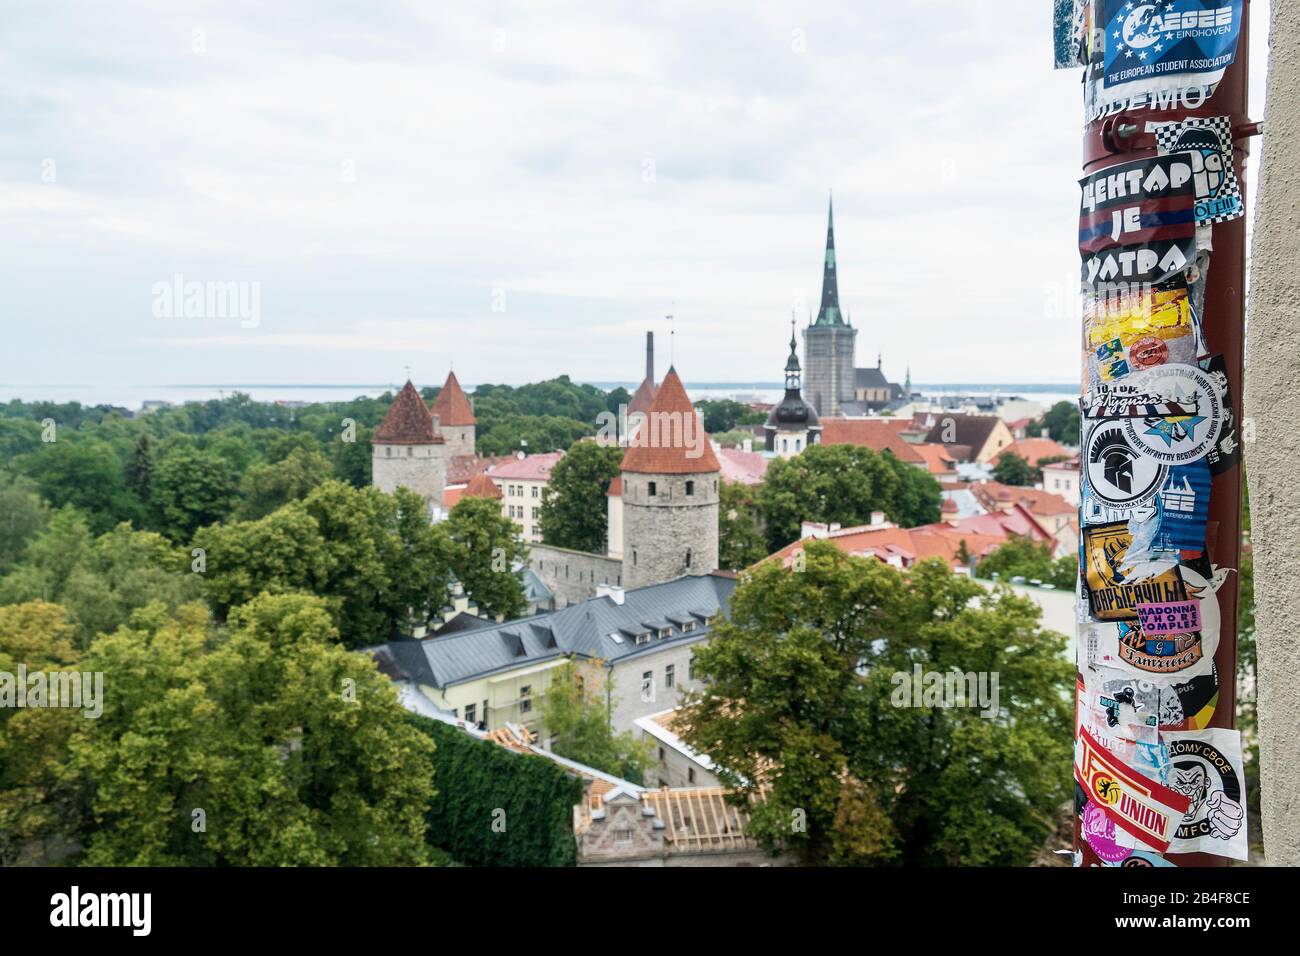 Estland, Tallinn, Altstadtblick, im Vordergrund beklebte Dachrinne, Clubszene Stock Photo